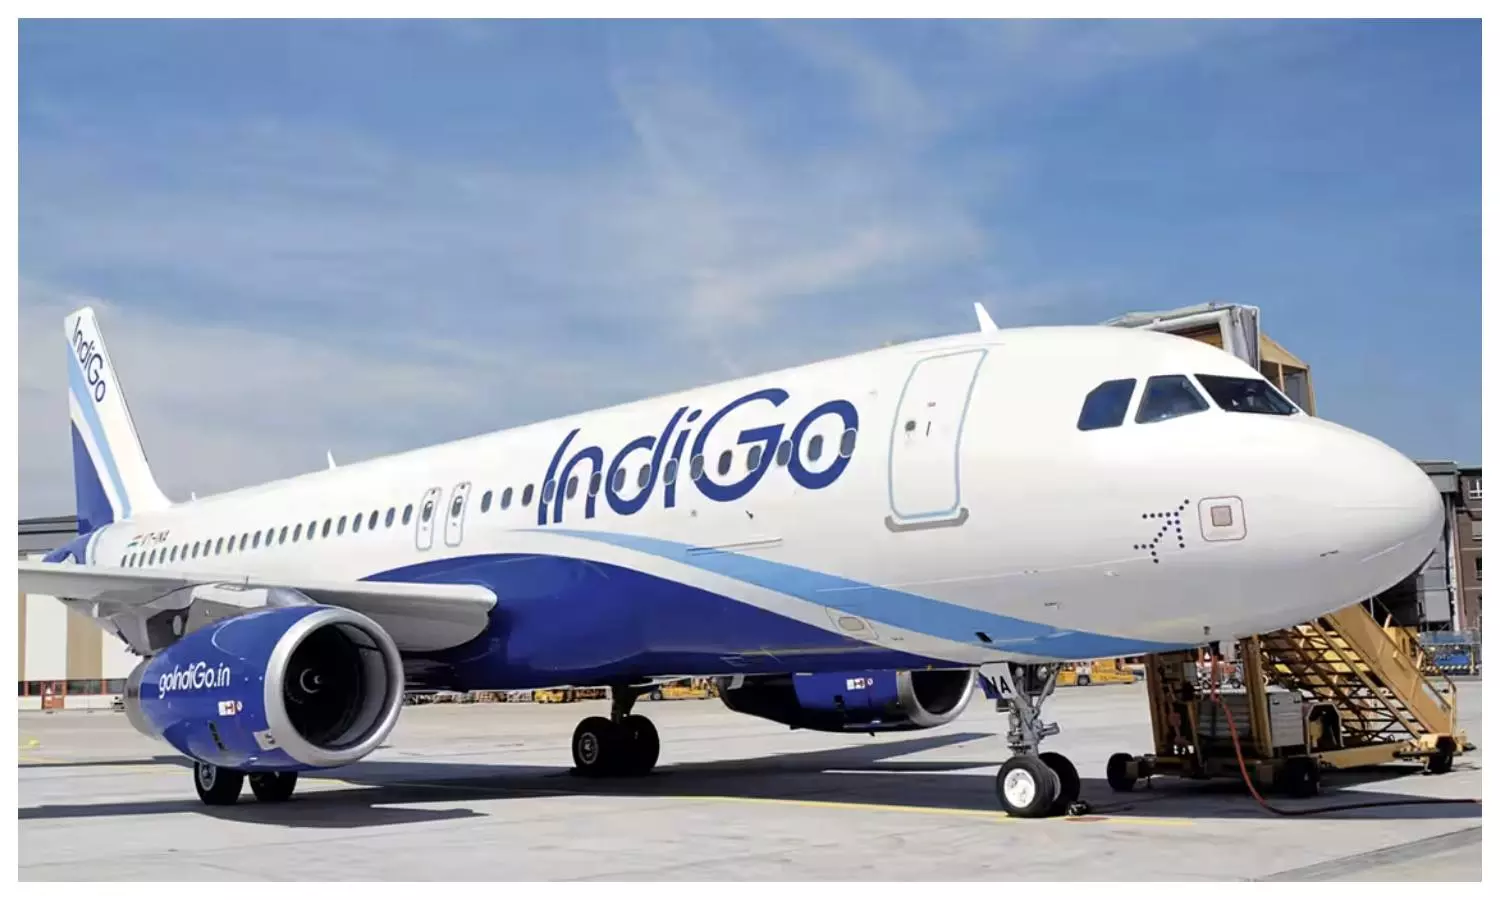 अयोध्या जाने वाले के लिए बड़ी आई सामने, एयरलाइन कंपनी इंडिगो ने नए रूट पर फ्लाइट शुरू करने का किया एलान